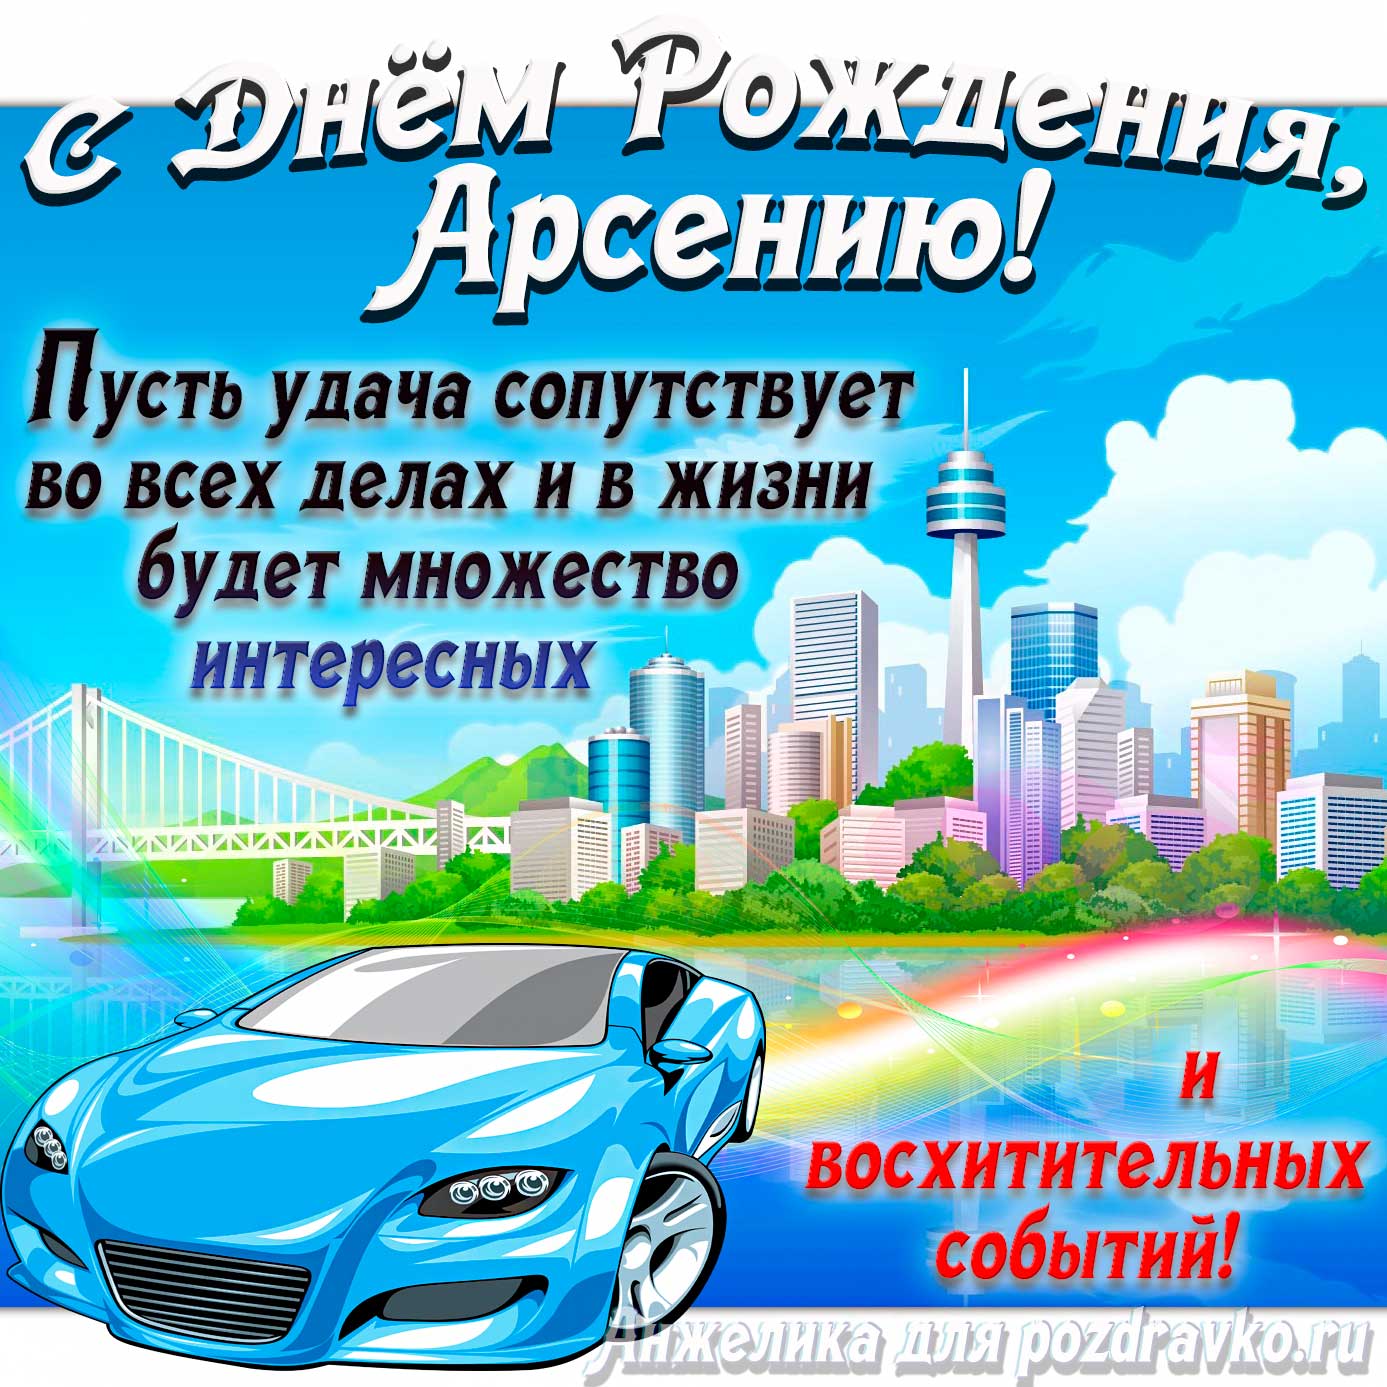 Открытка - с Днём Рождения Арсений с голубой машиной и пожеланием. Скачать бесплатно или отправить картинку.